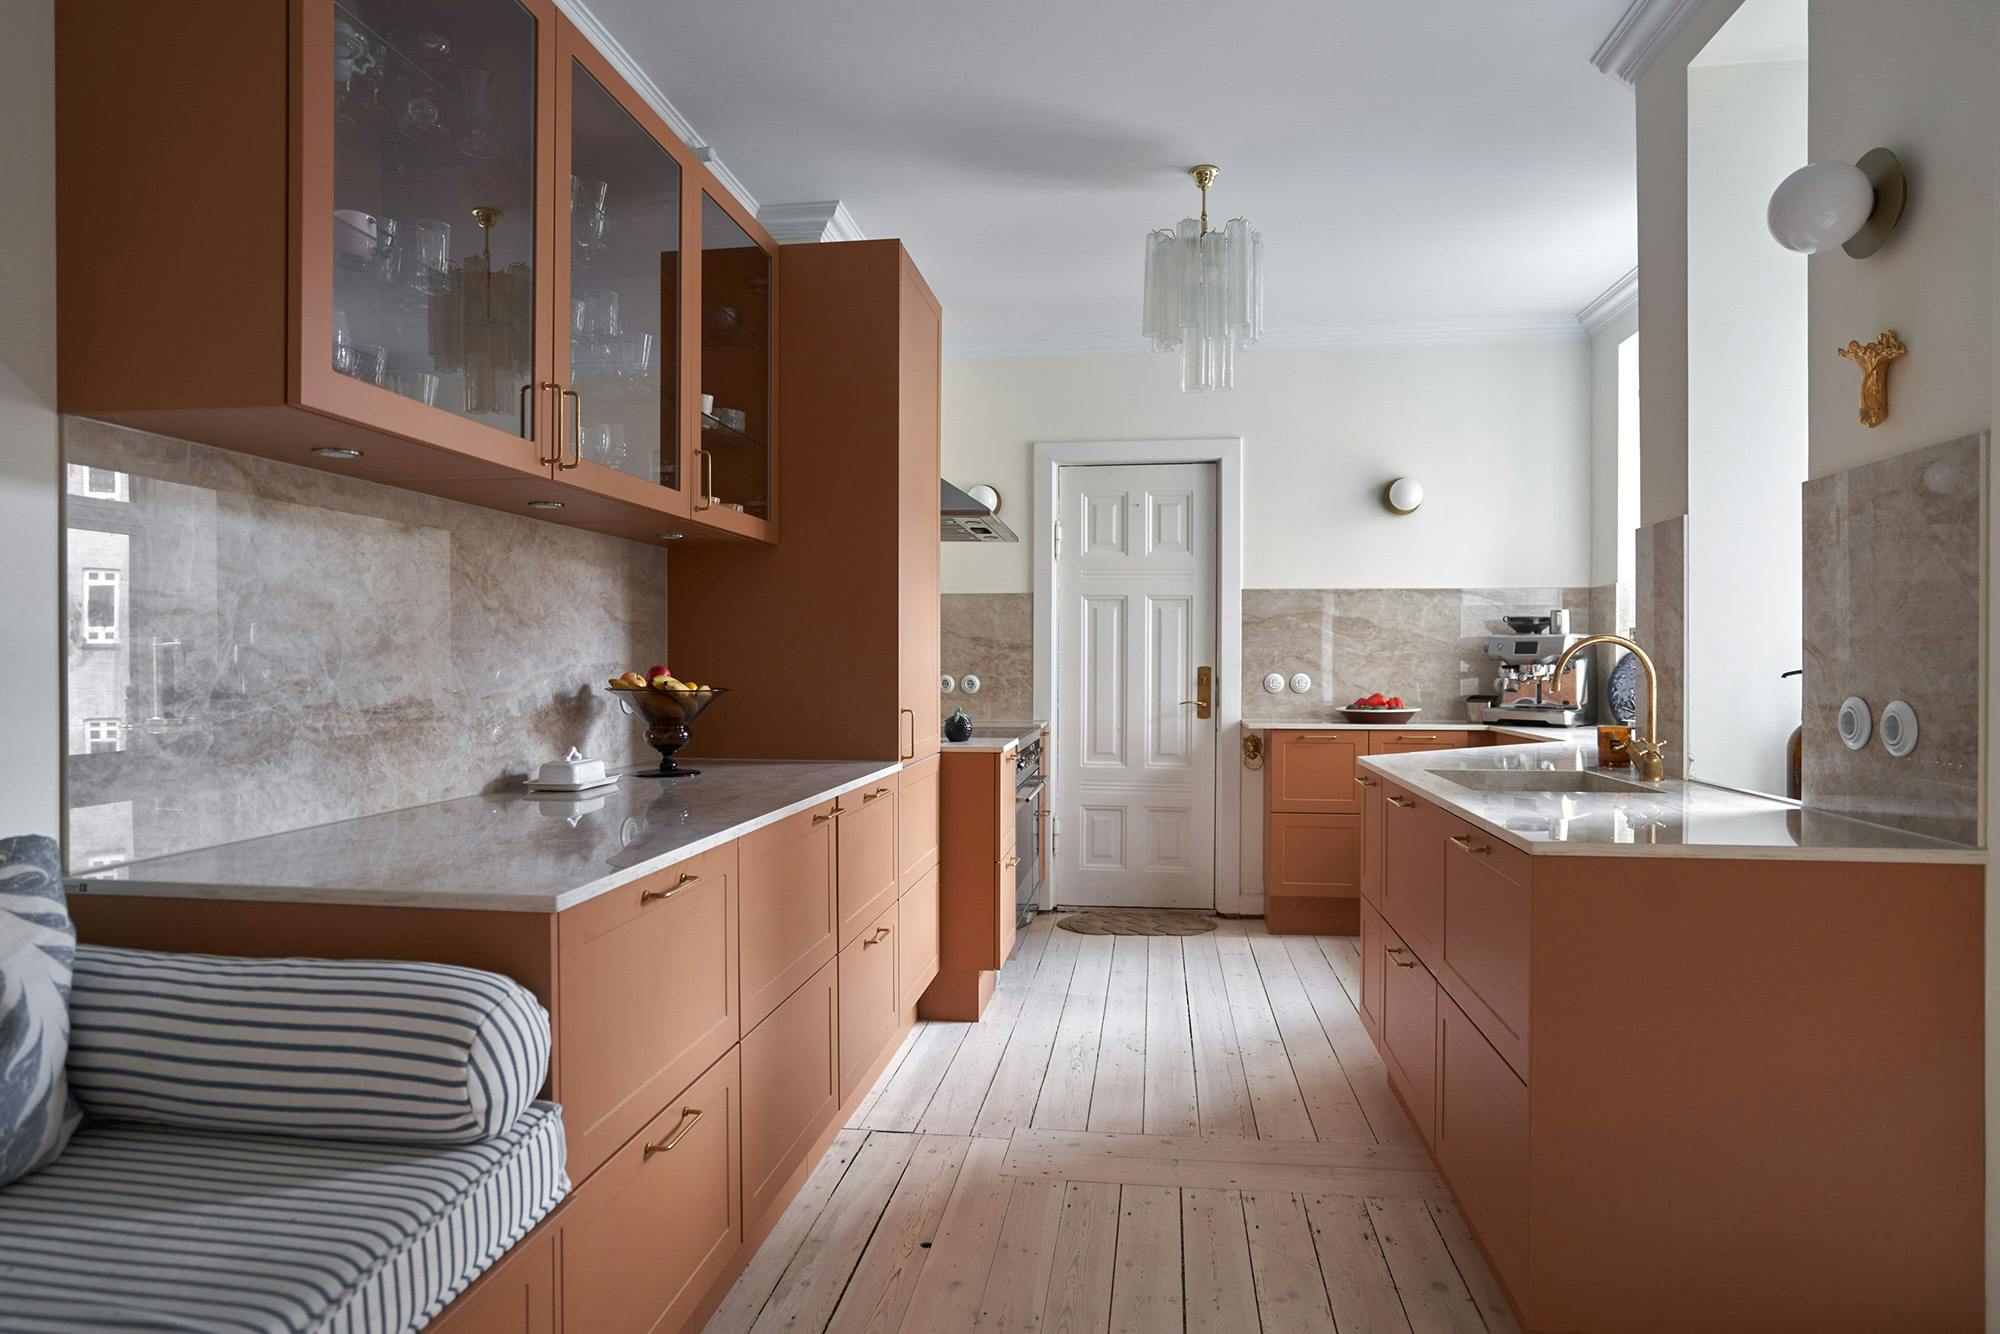 Numero immagine 33 della sezione corrente di Architect and interior designer Memmu Pitkänen chose the beautiful Dekton Helena for her kitchen di Cosentino Italia